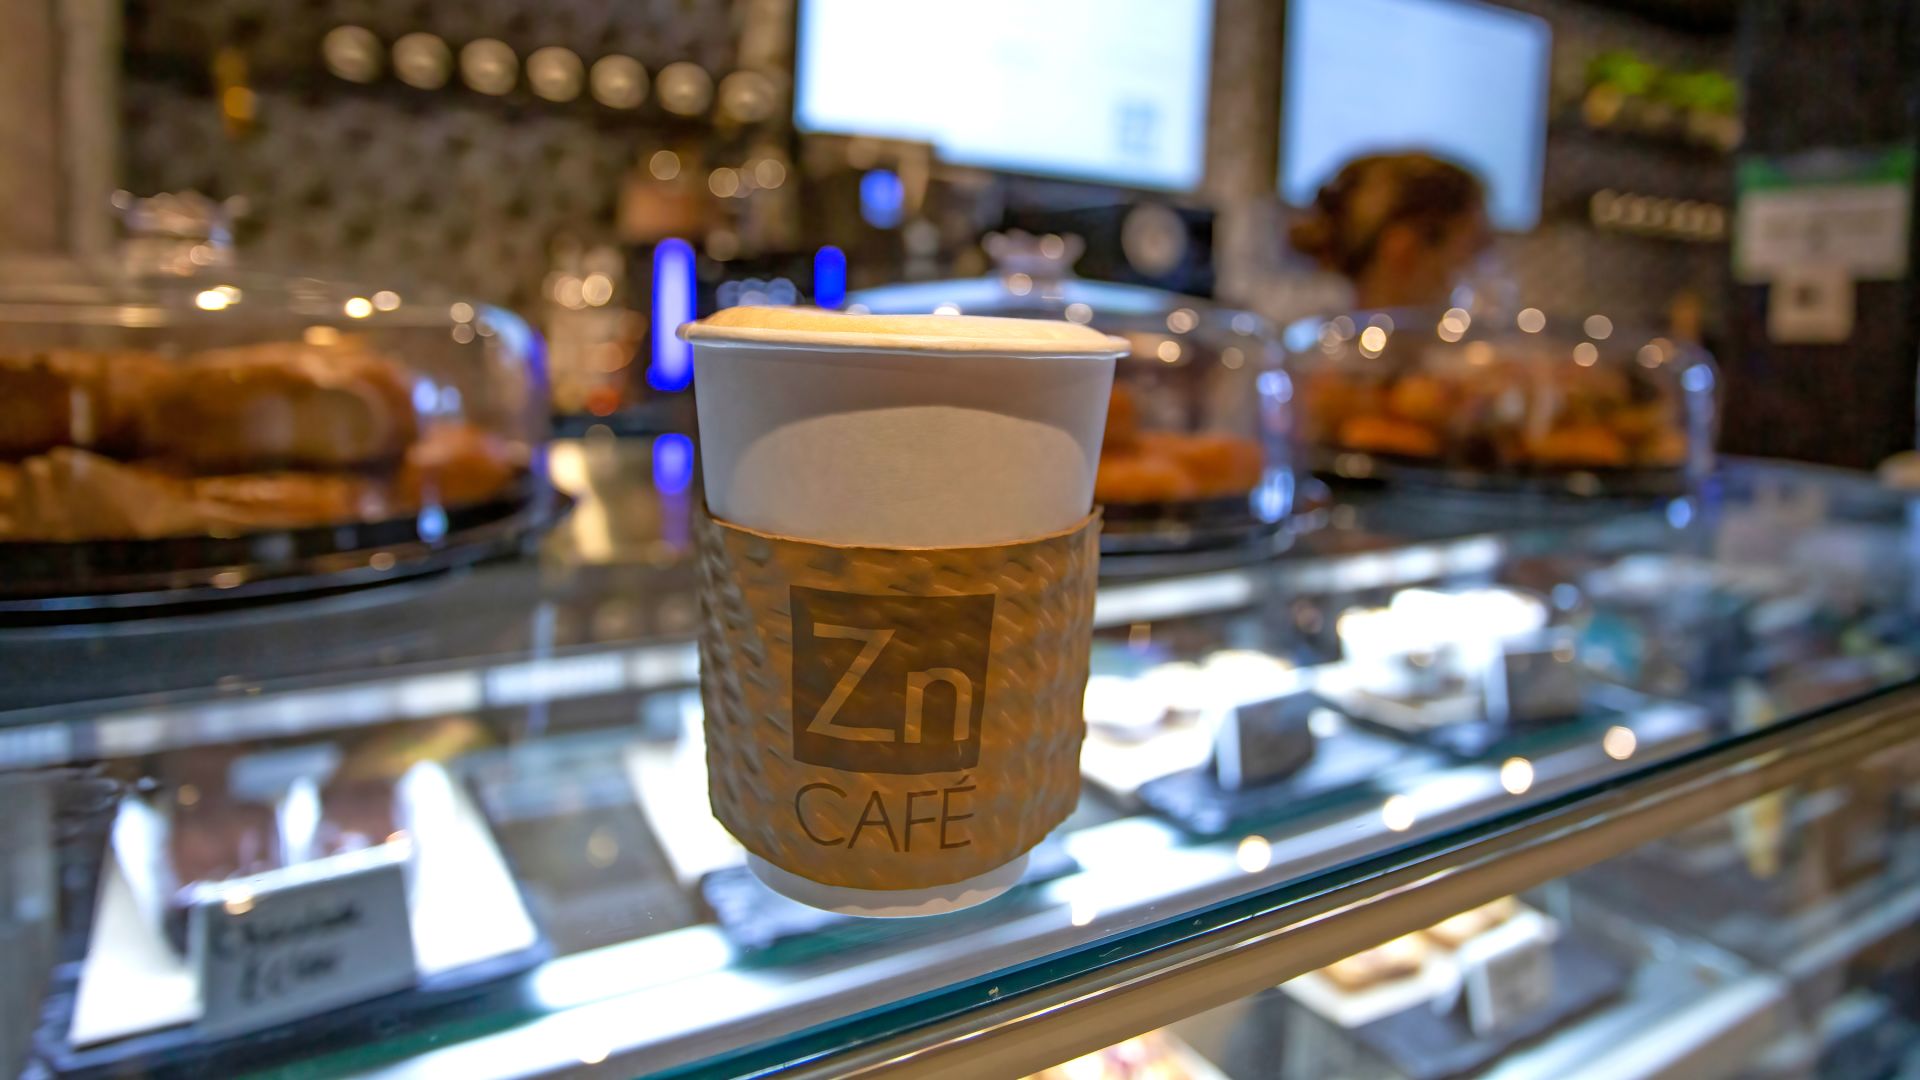 Zinc Cafe Latte